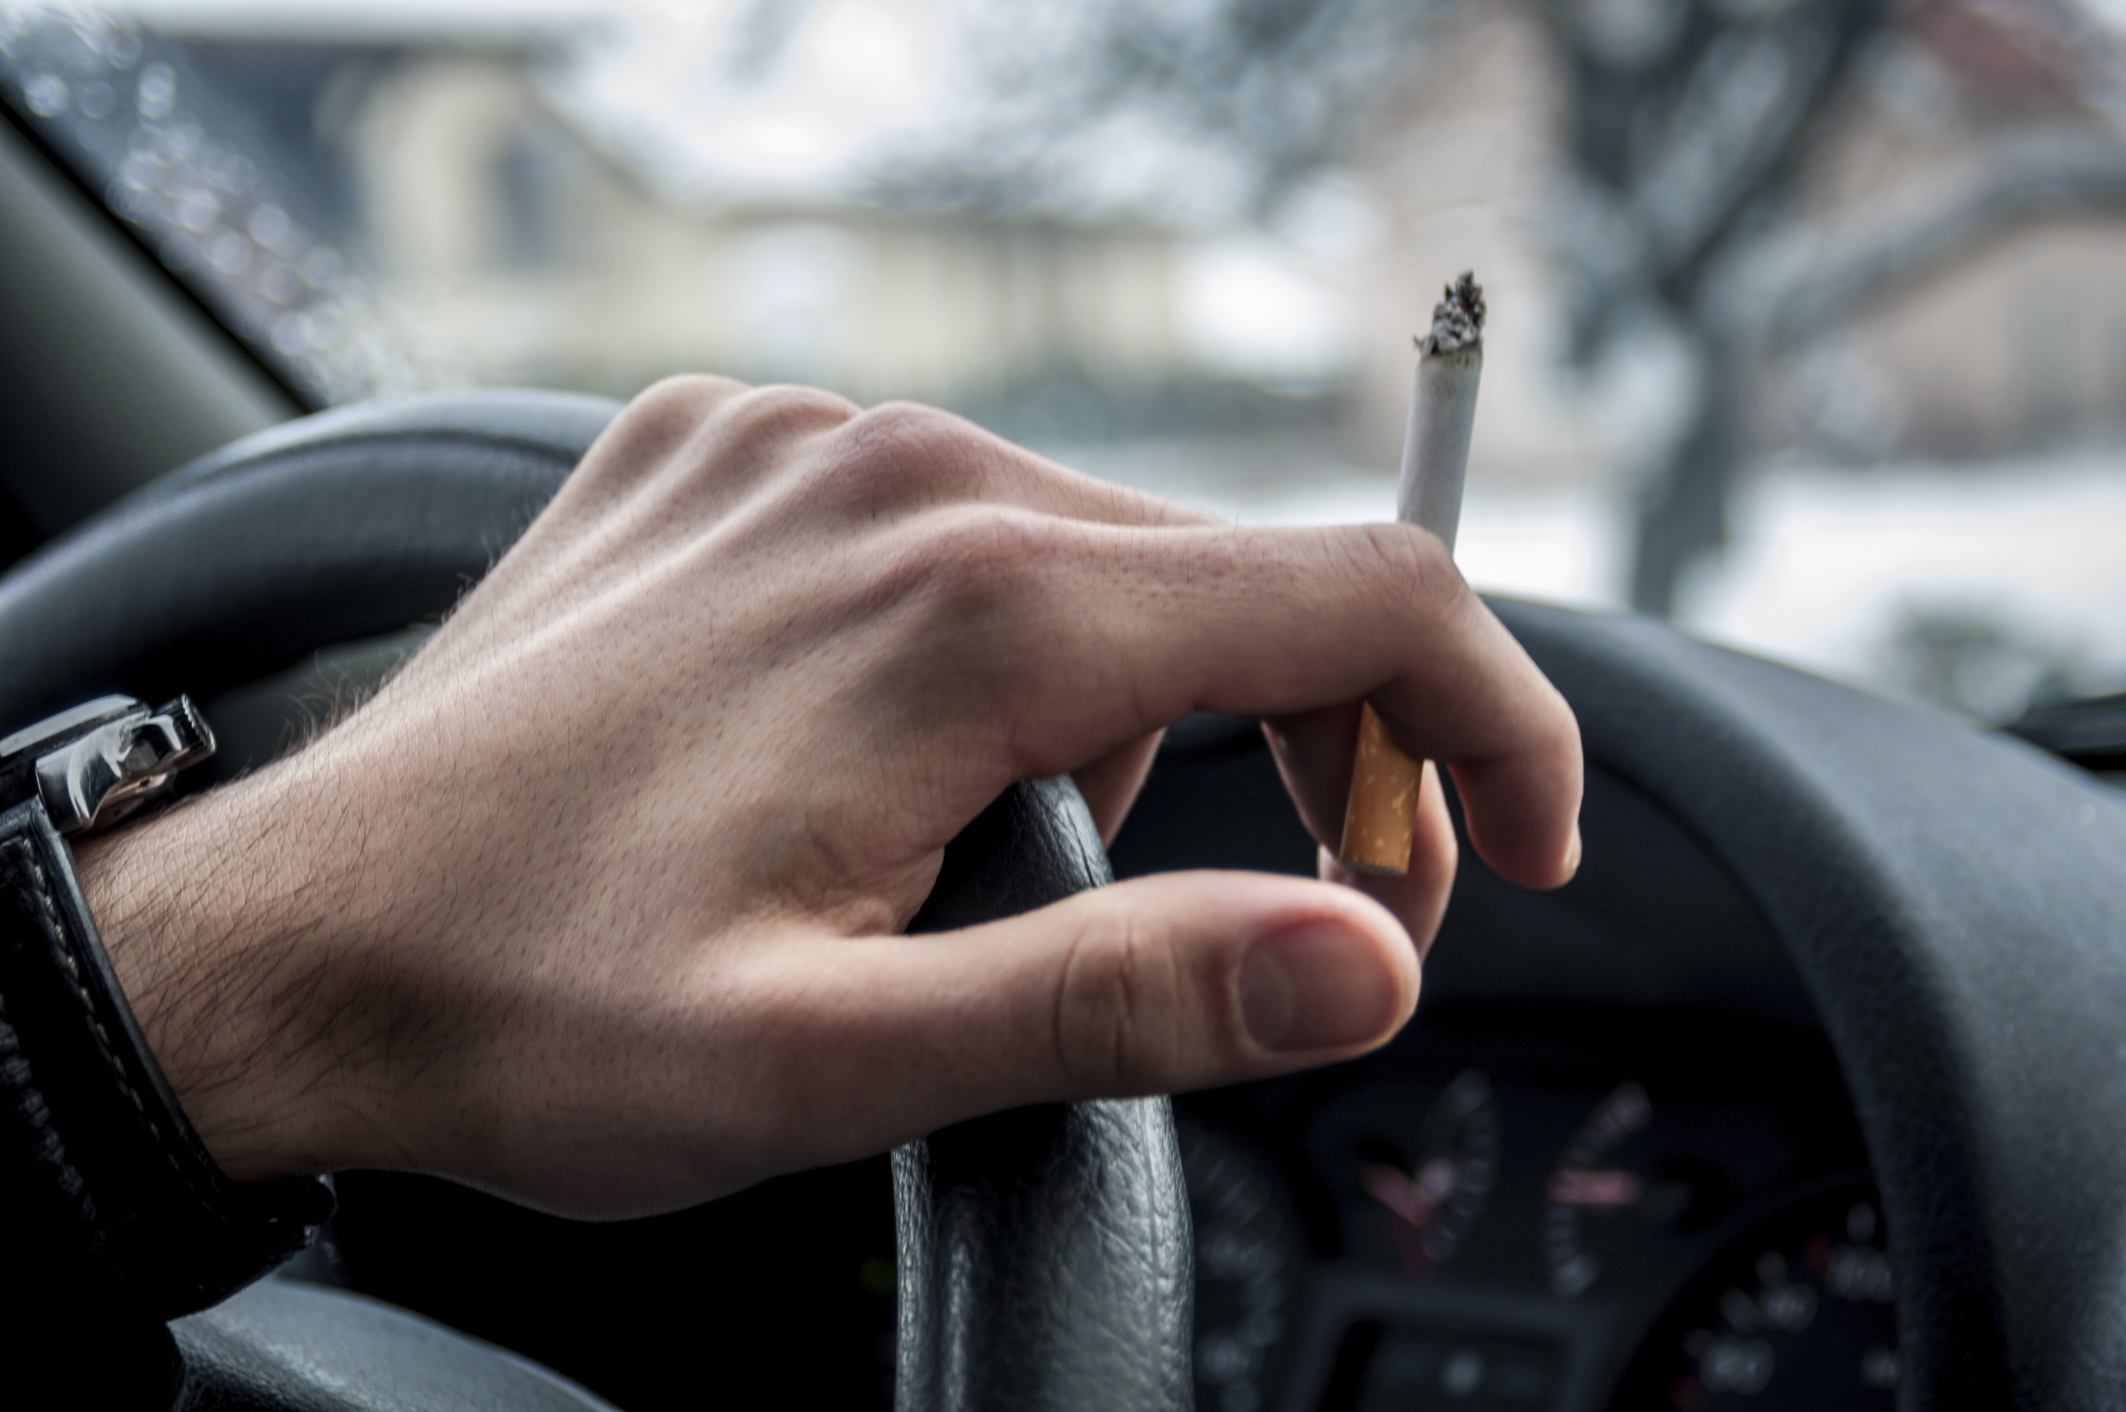 Británie chystá přelomový zákon. Zakáže kouření v autech vezoucích dítě